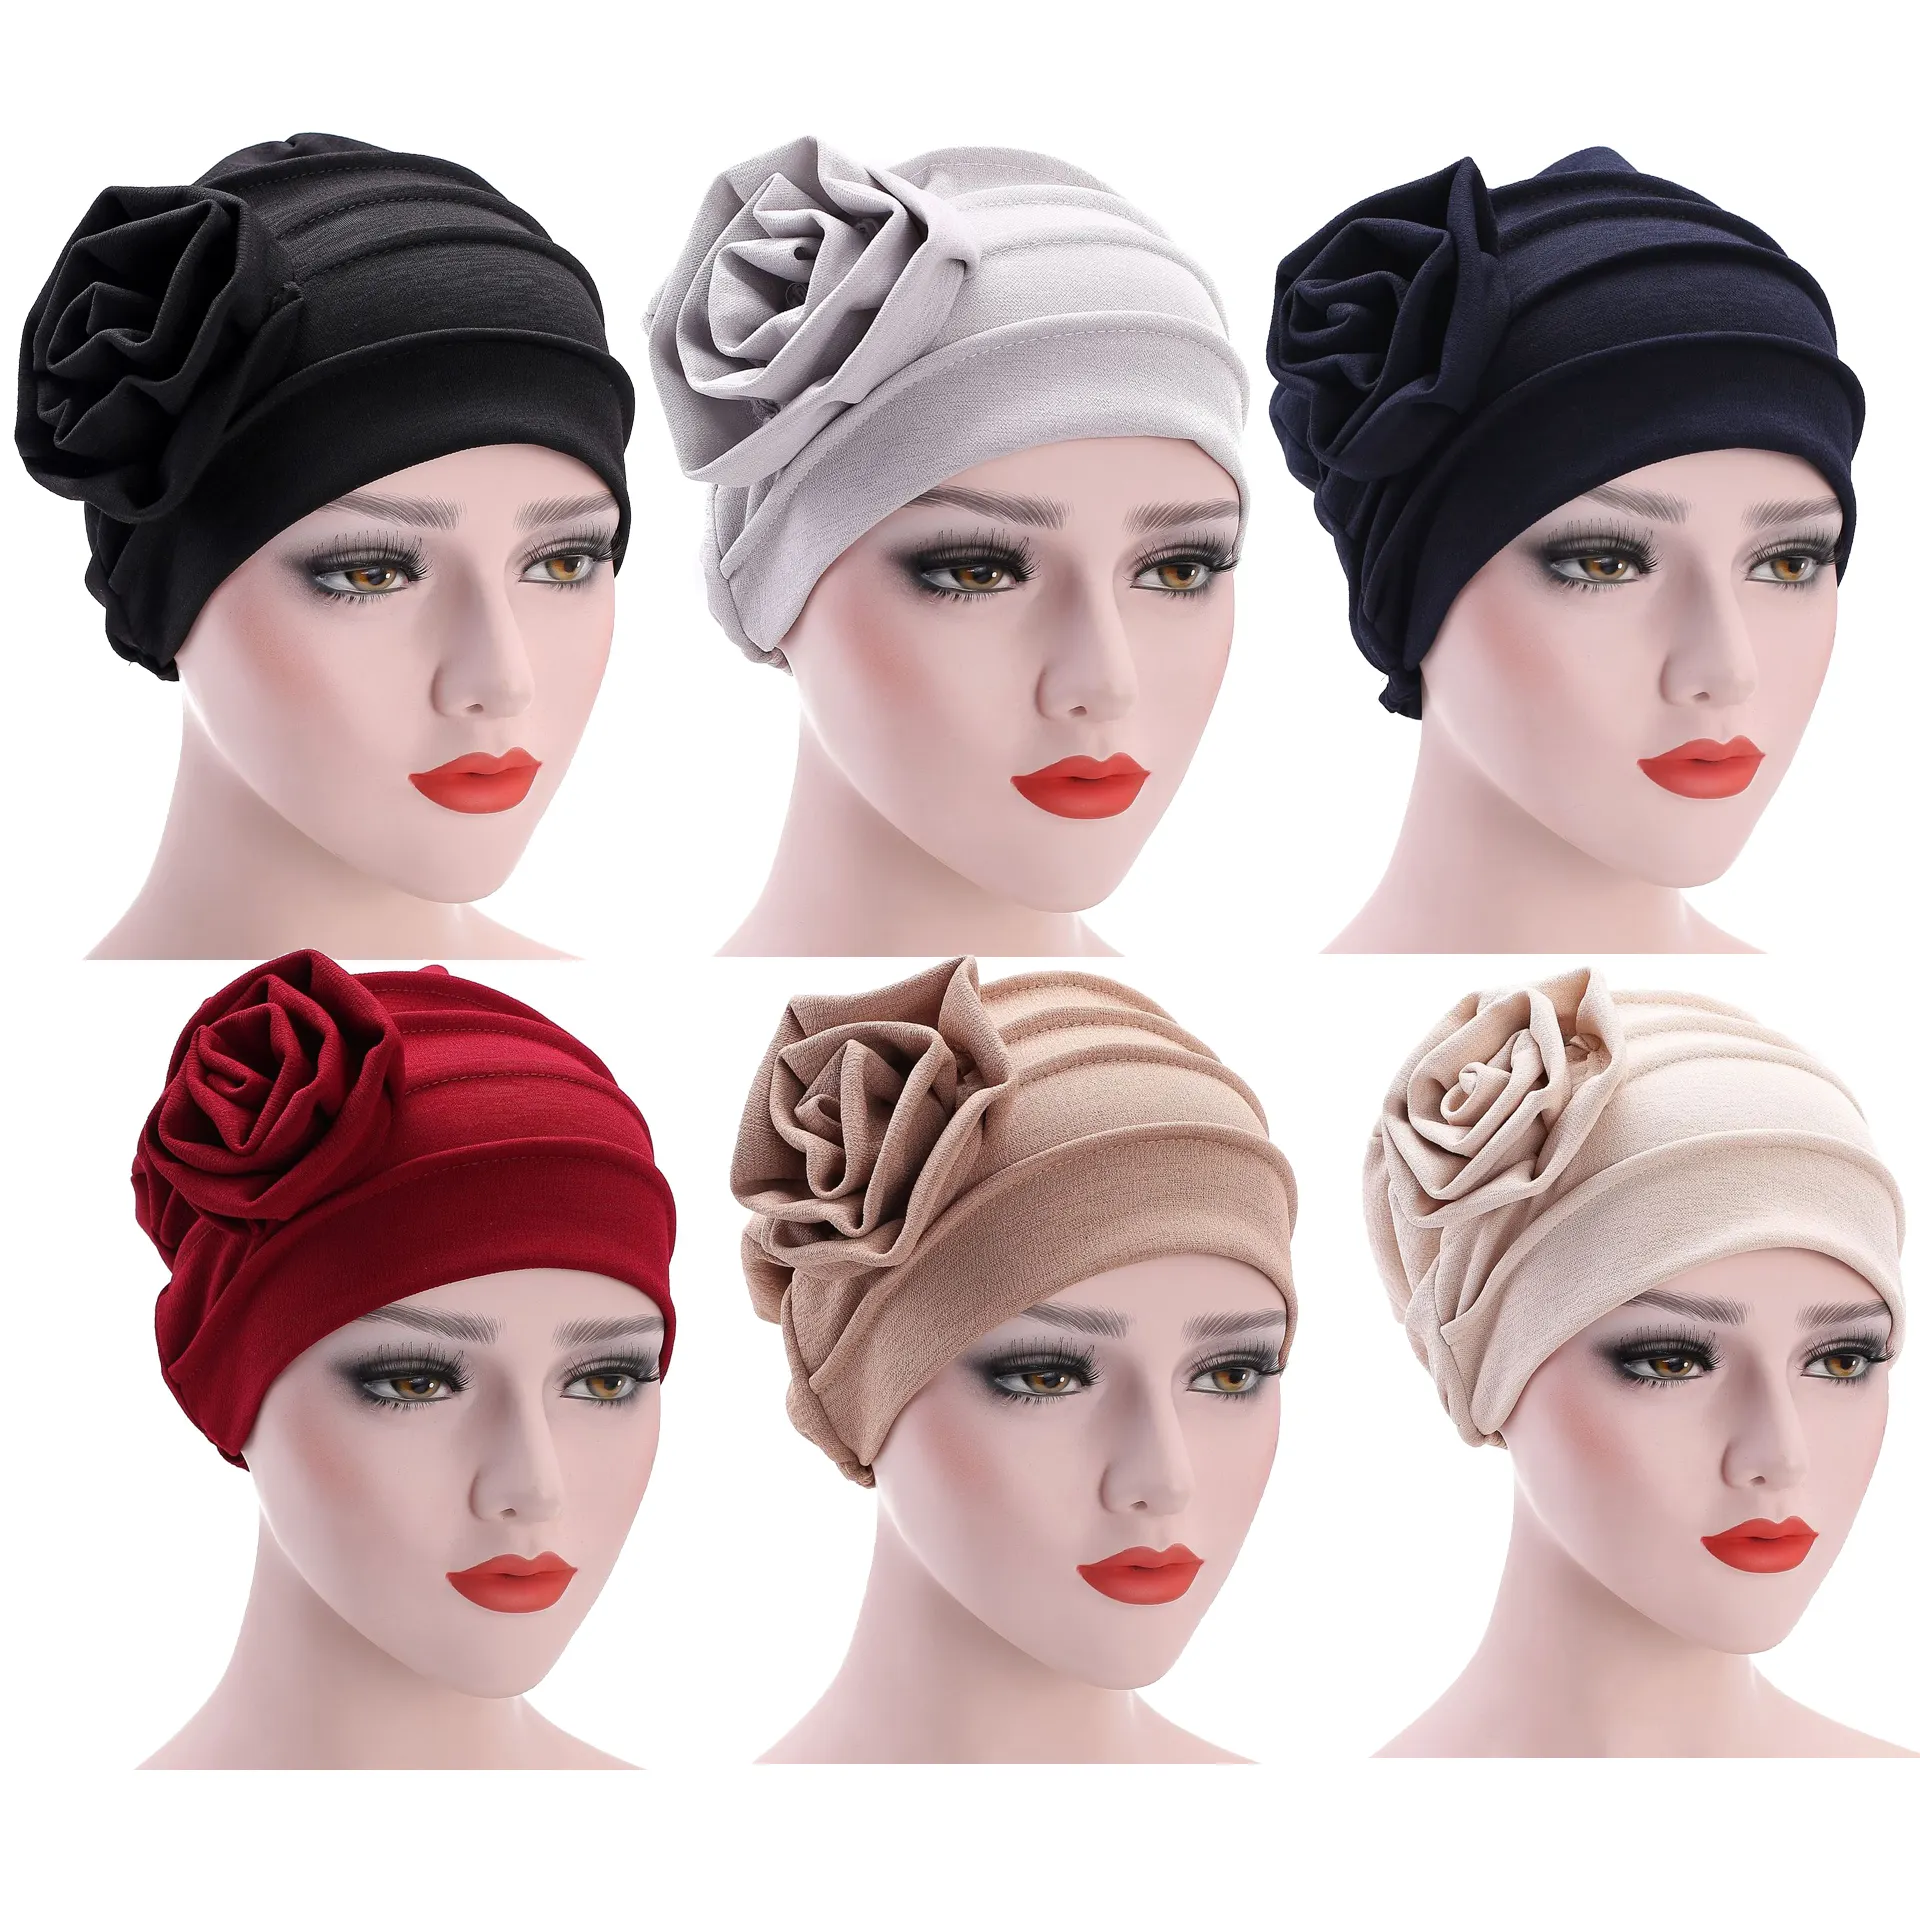 Chapeau Kaki XLGX Femme Bonnet,Musulmane Turban Cotton Bambou Chapeaux Elastique Wrap Hijab Cap pour Chimio Yoga Maquillage 